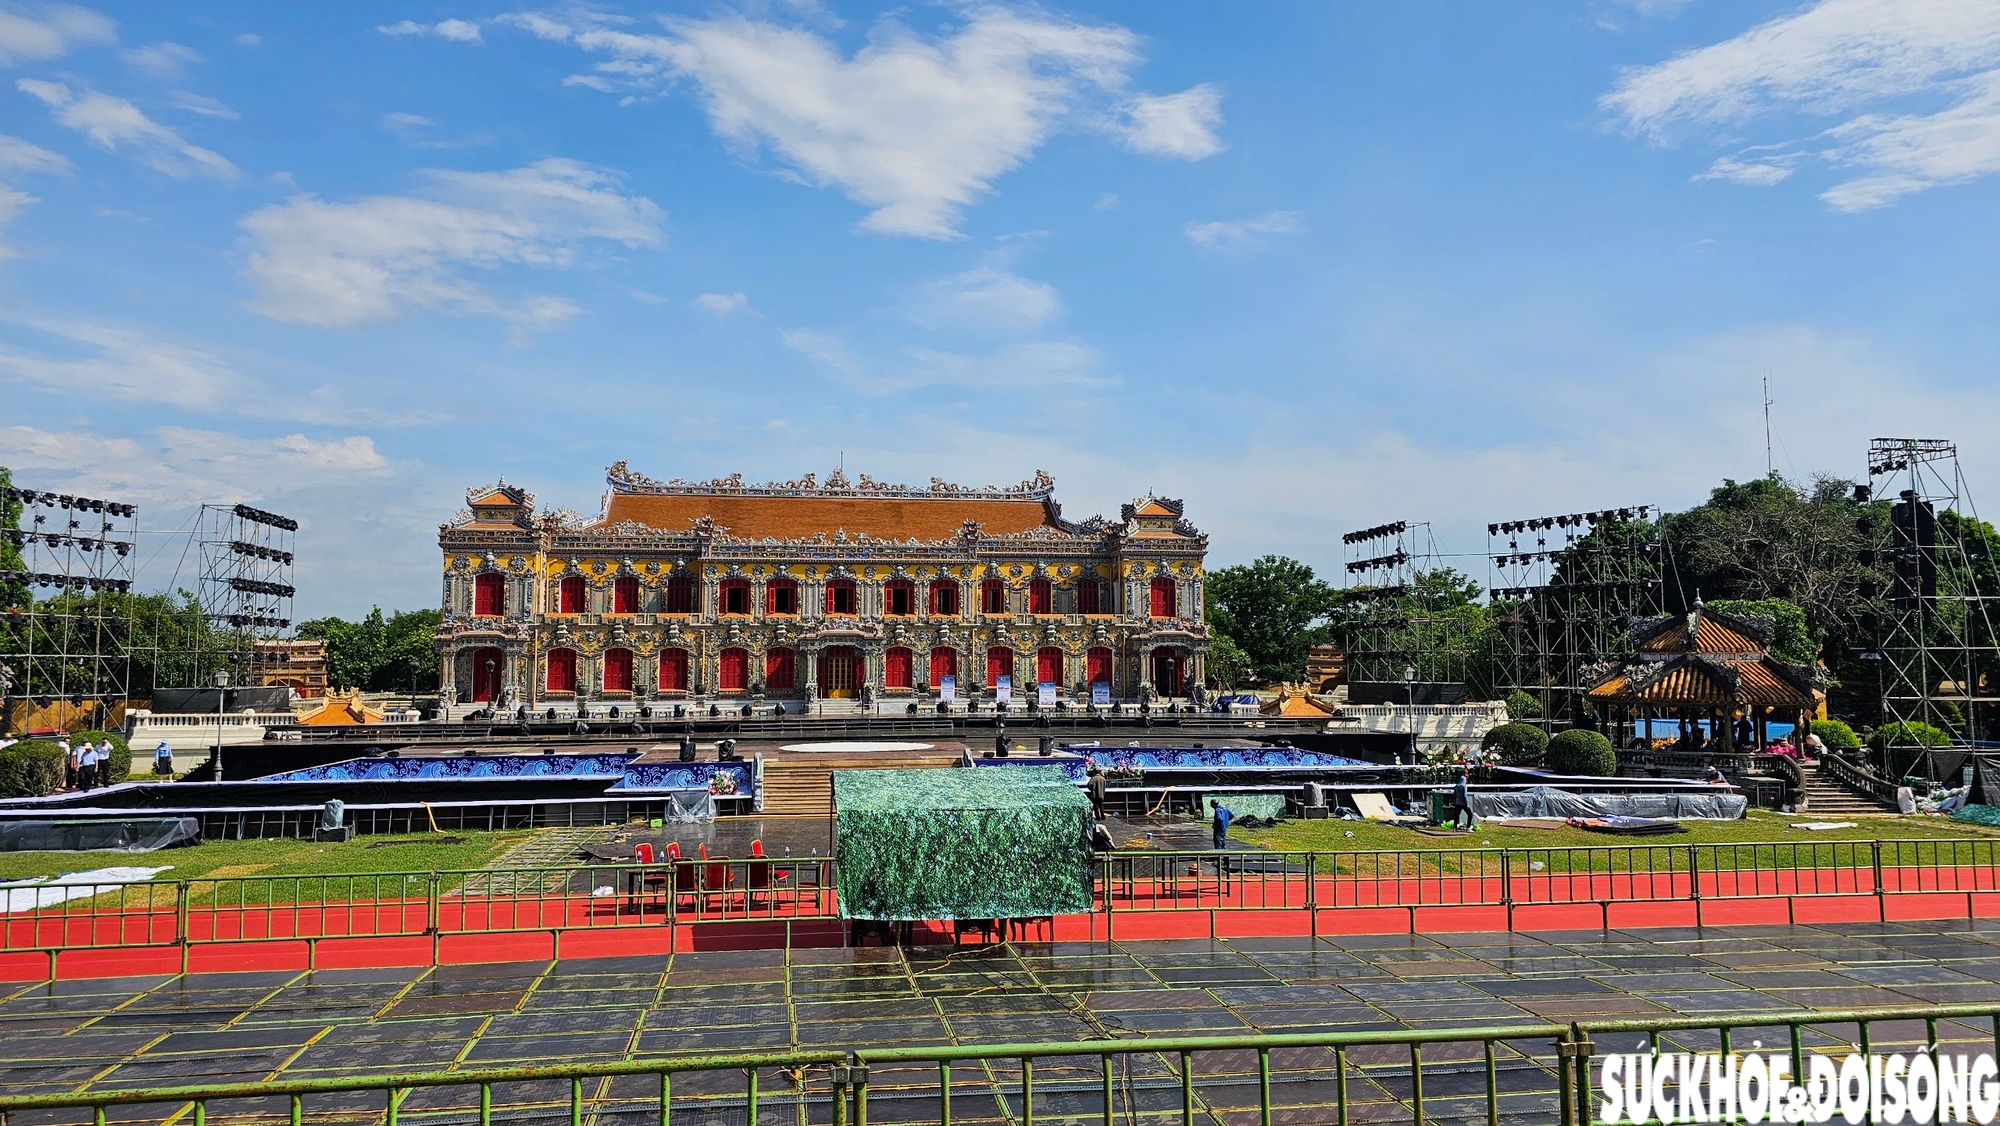 Gấp rút chuẩn bị khai mạc Festival Huế tại cung điện triệu đô- Ảnh 1.